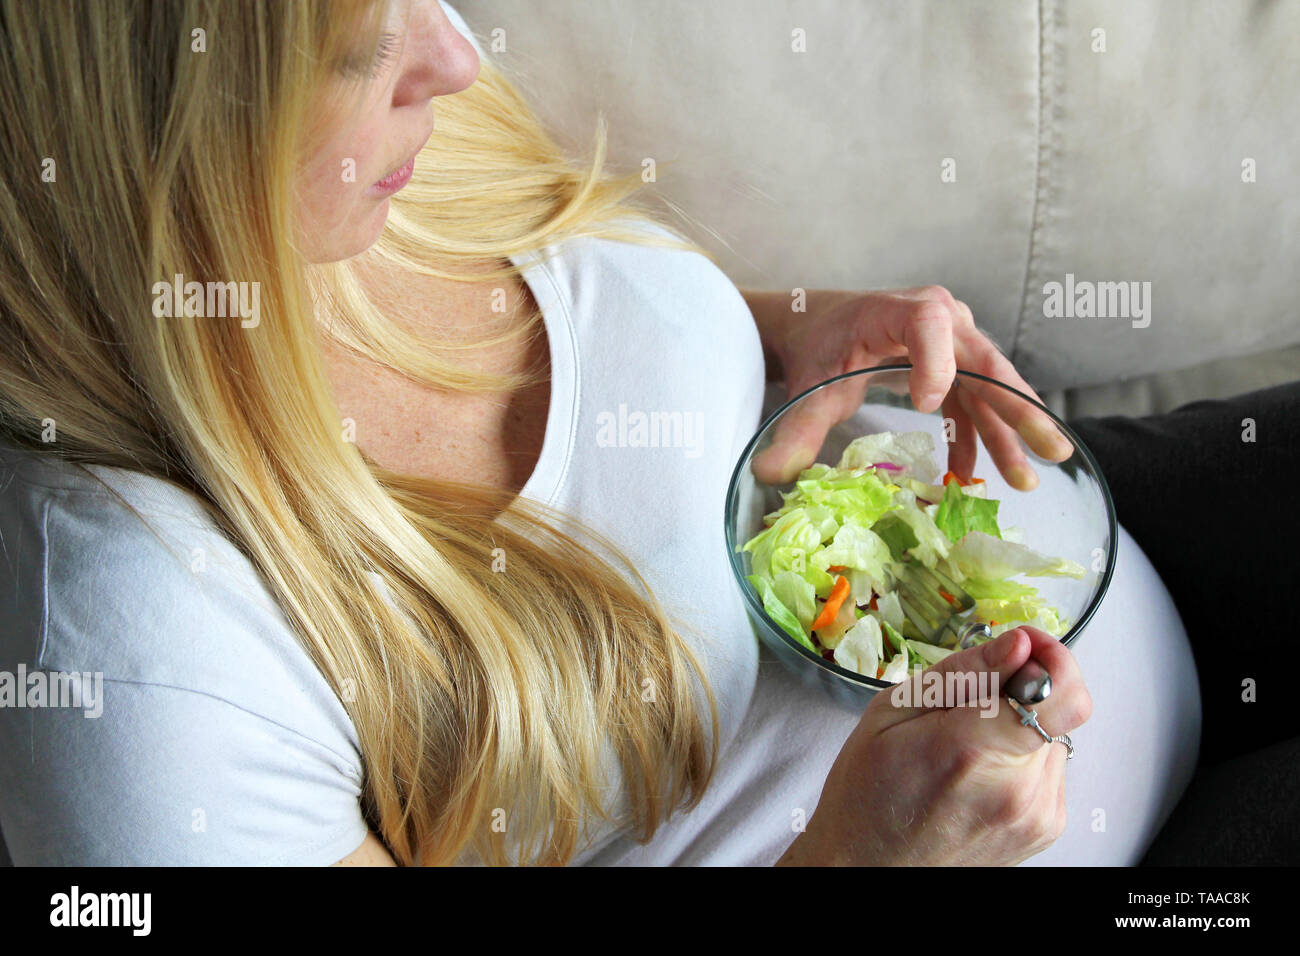 Un saludable joven embarazada con largo pelo rubio es sentarse y descansar mientras come una ensalada verde frondosa. Foto de stock